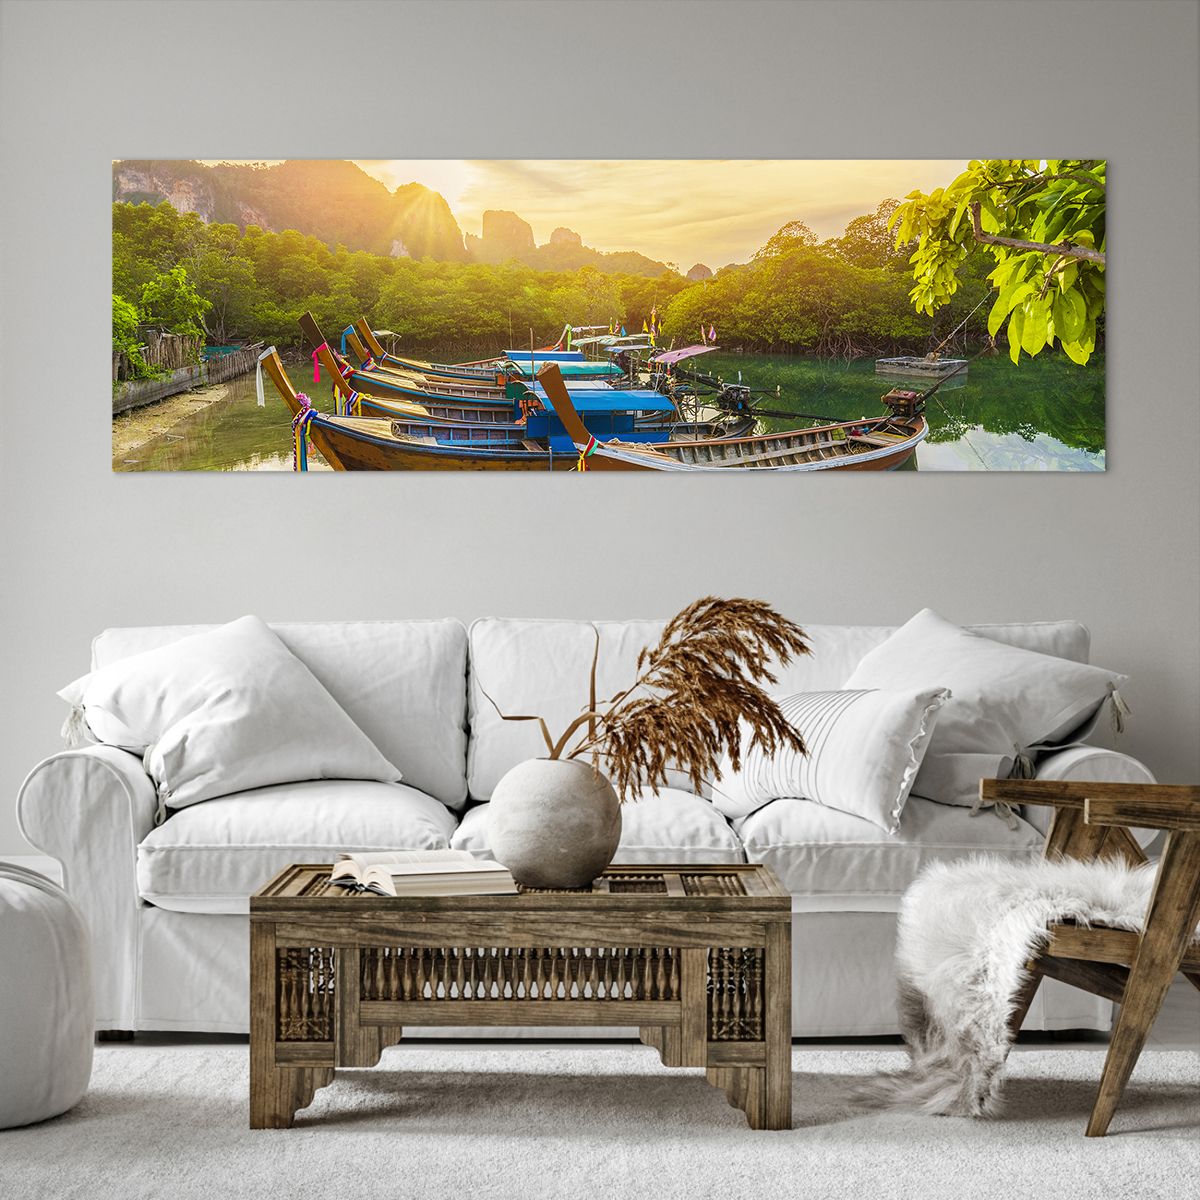 Bild auf Leinwand Landschaft, Bild auf Leinwand Thailand, Bild auf Leinwand Meer, Bild auf Leinwand Wald, Bild auf Leinwand Asien